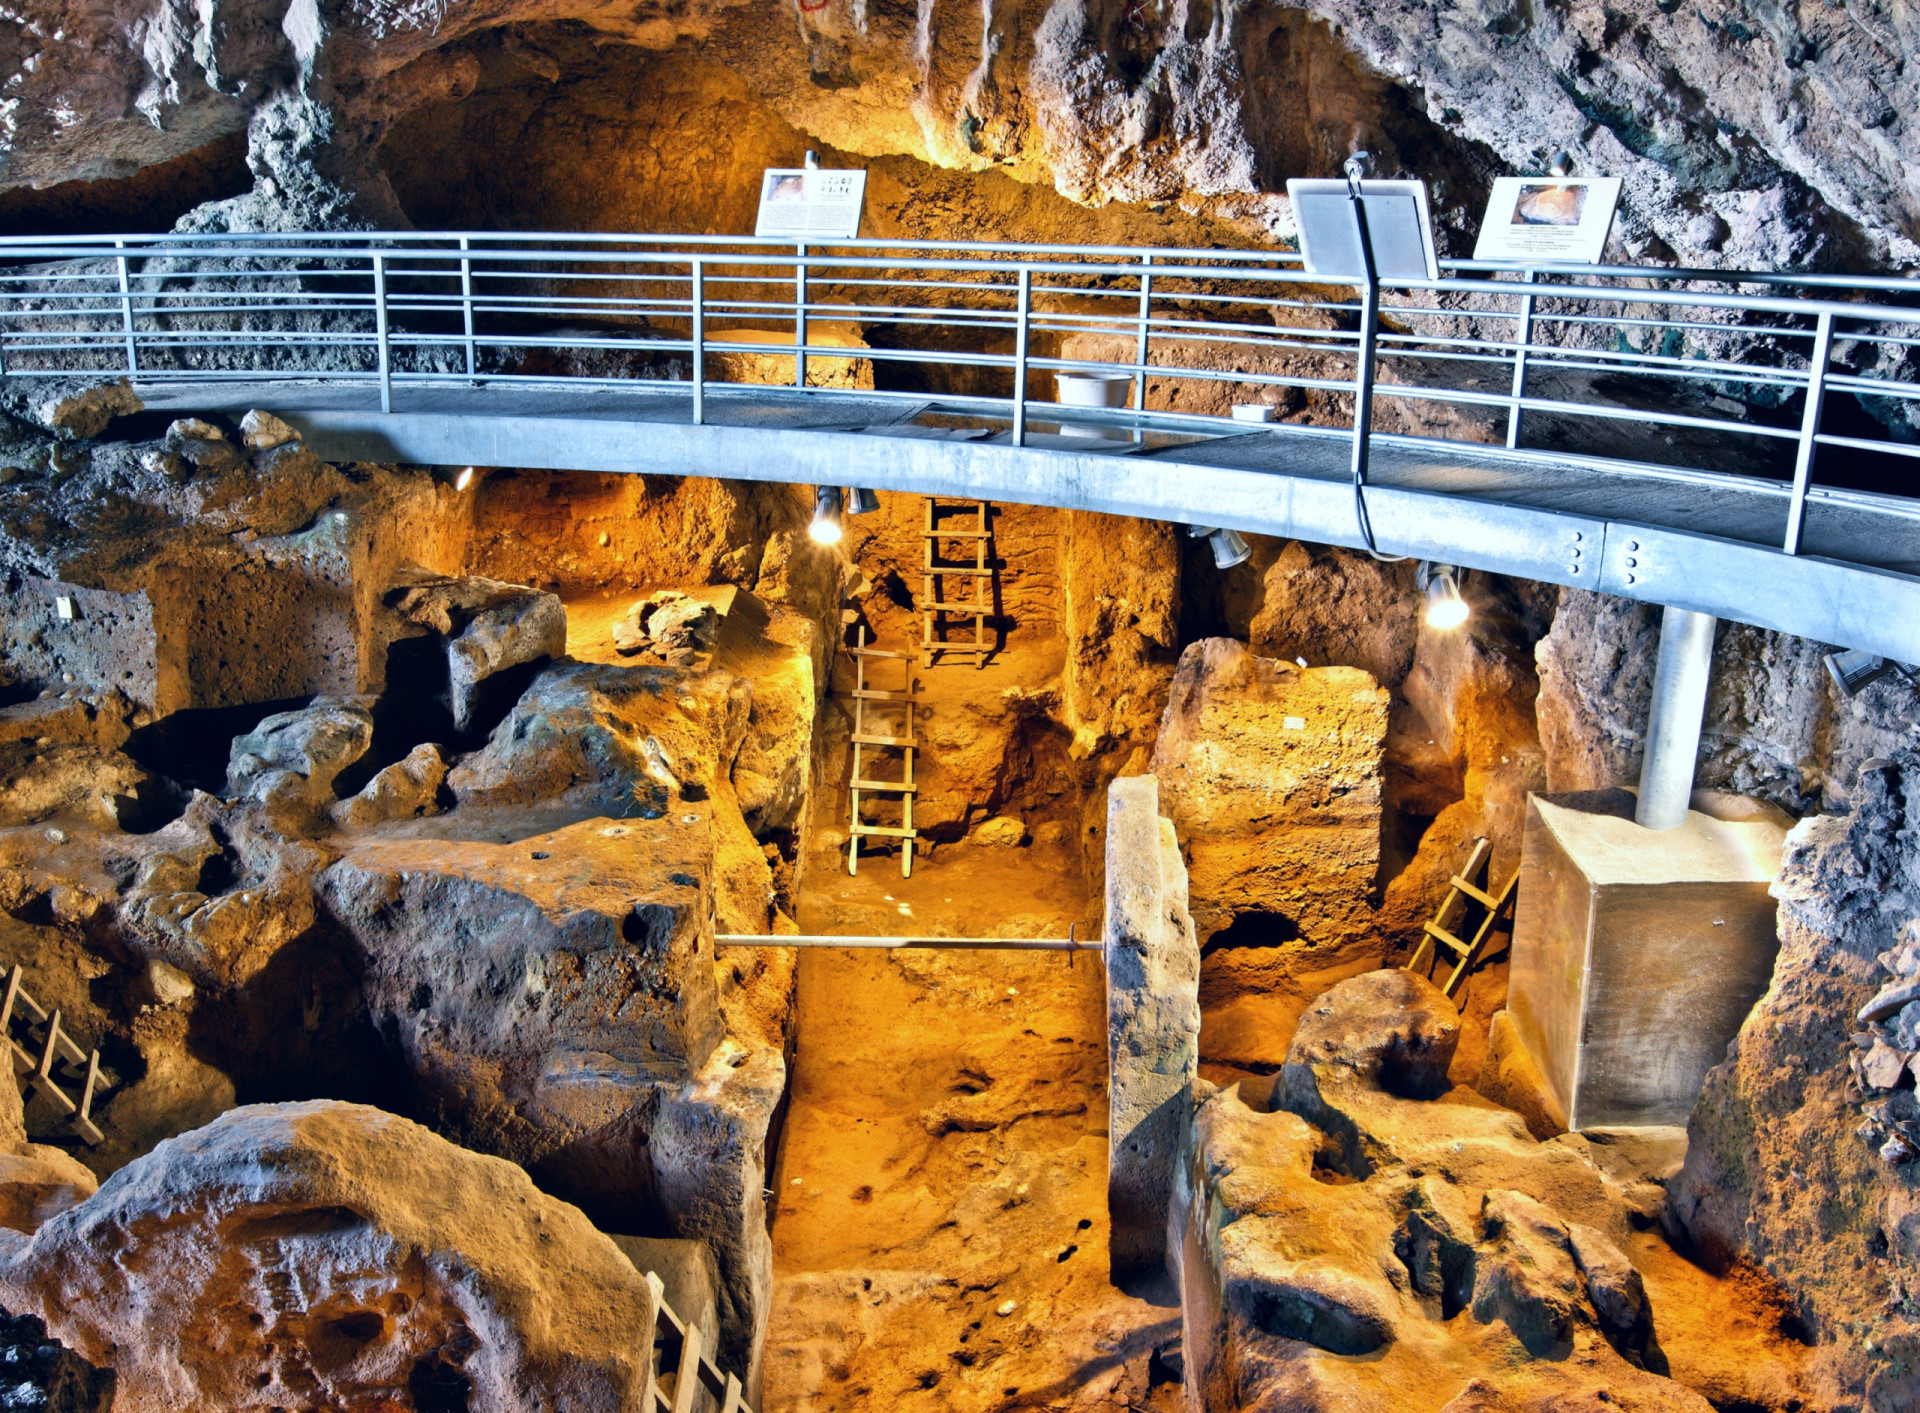 <p>Les ruines les plus anciennes sont celles que l'on trouve dans la grotte de Theopetra, en Grèce, en particulier le mur de pierre situé à l'entrée de la caverne de calcaire. Estimé à environ 21 000 ans avant notre ère, il s'agit du plus ancien exemple connu de structure construite par l'homme. On pense qu'il a servi de brise-vent aux habitants de la grotte pendant la dernière période glaciaire.</p><p><a href="https://www.msn.com/fr-ca/community/channel/vid-7xx8mnucu55yw63we9va2gwr7uihbxwc68fxqp25x6tg4ftibpra?cvid=94631541bc0f4f89bfd59158d696ad7e">Suivez-nous et accédez tous les jours à du contenu exclusif</a></p>